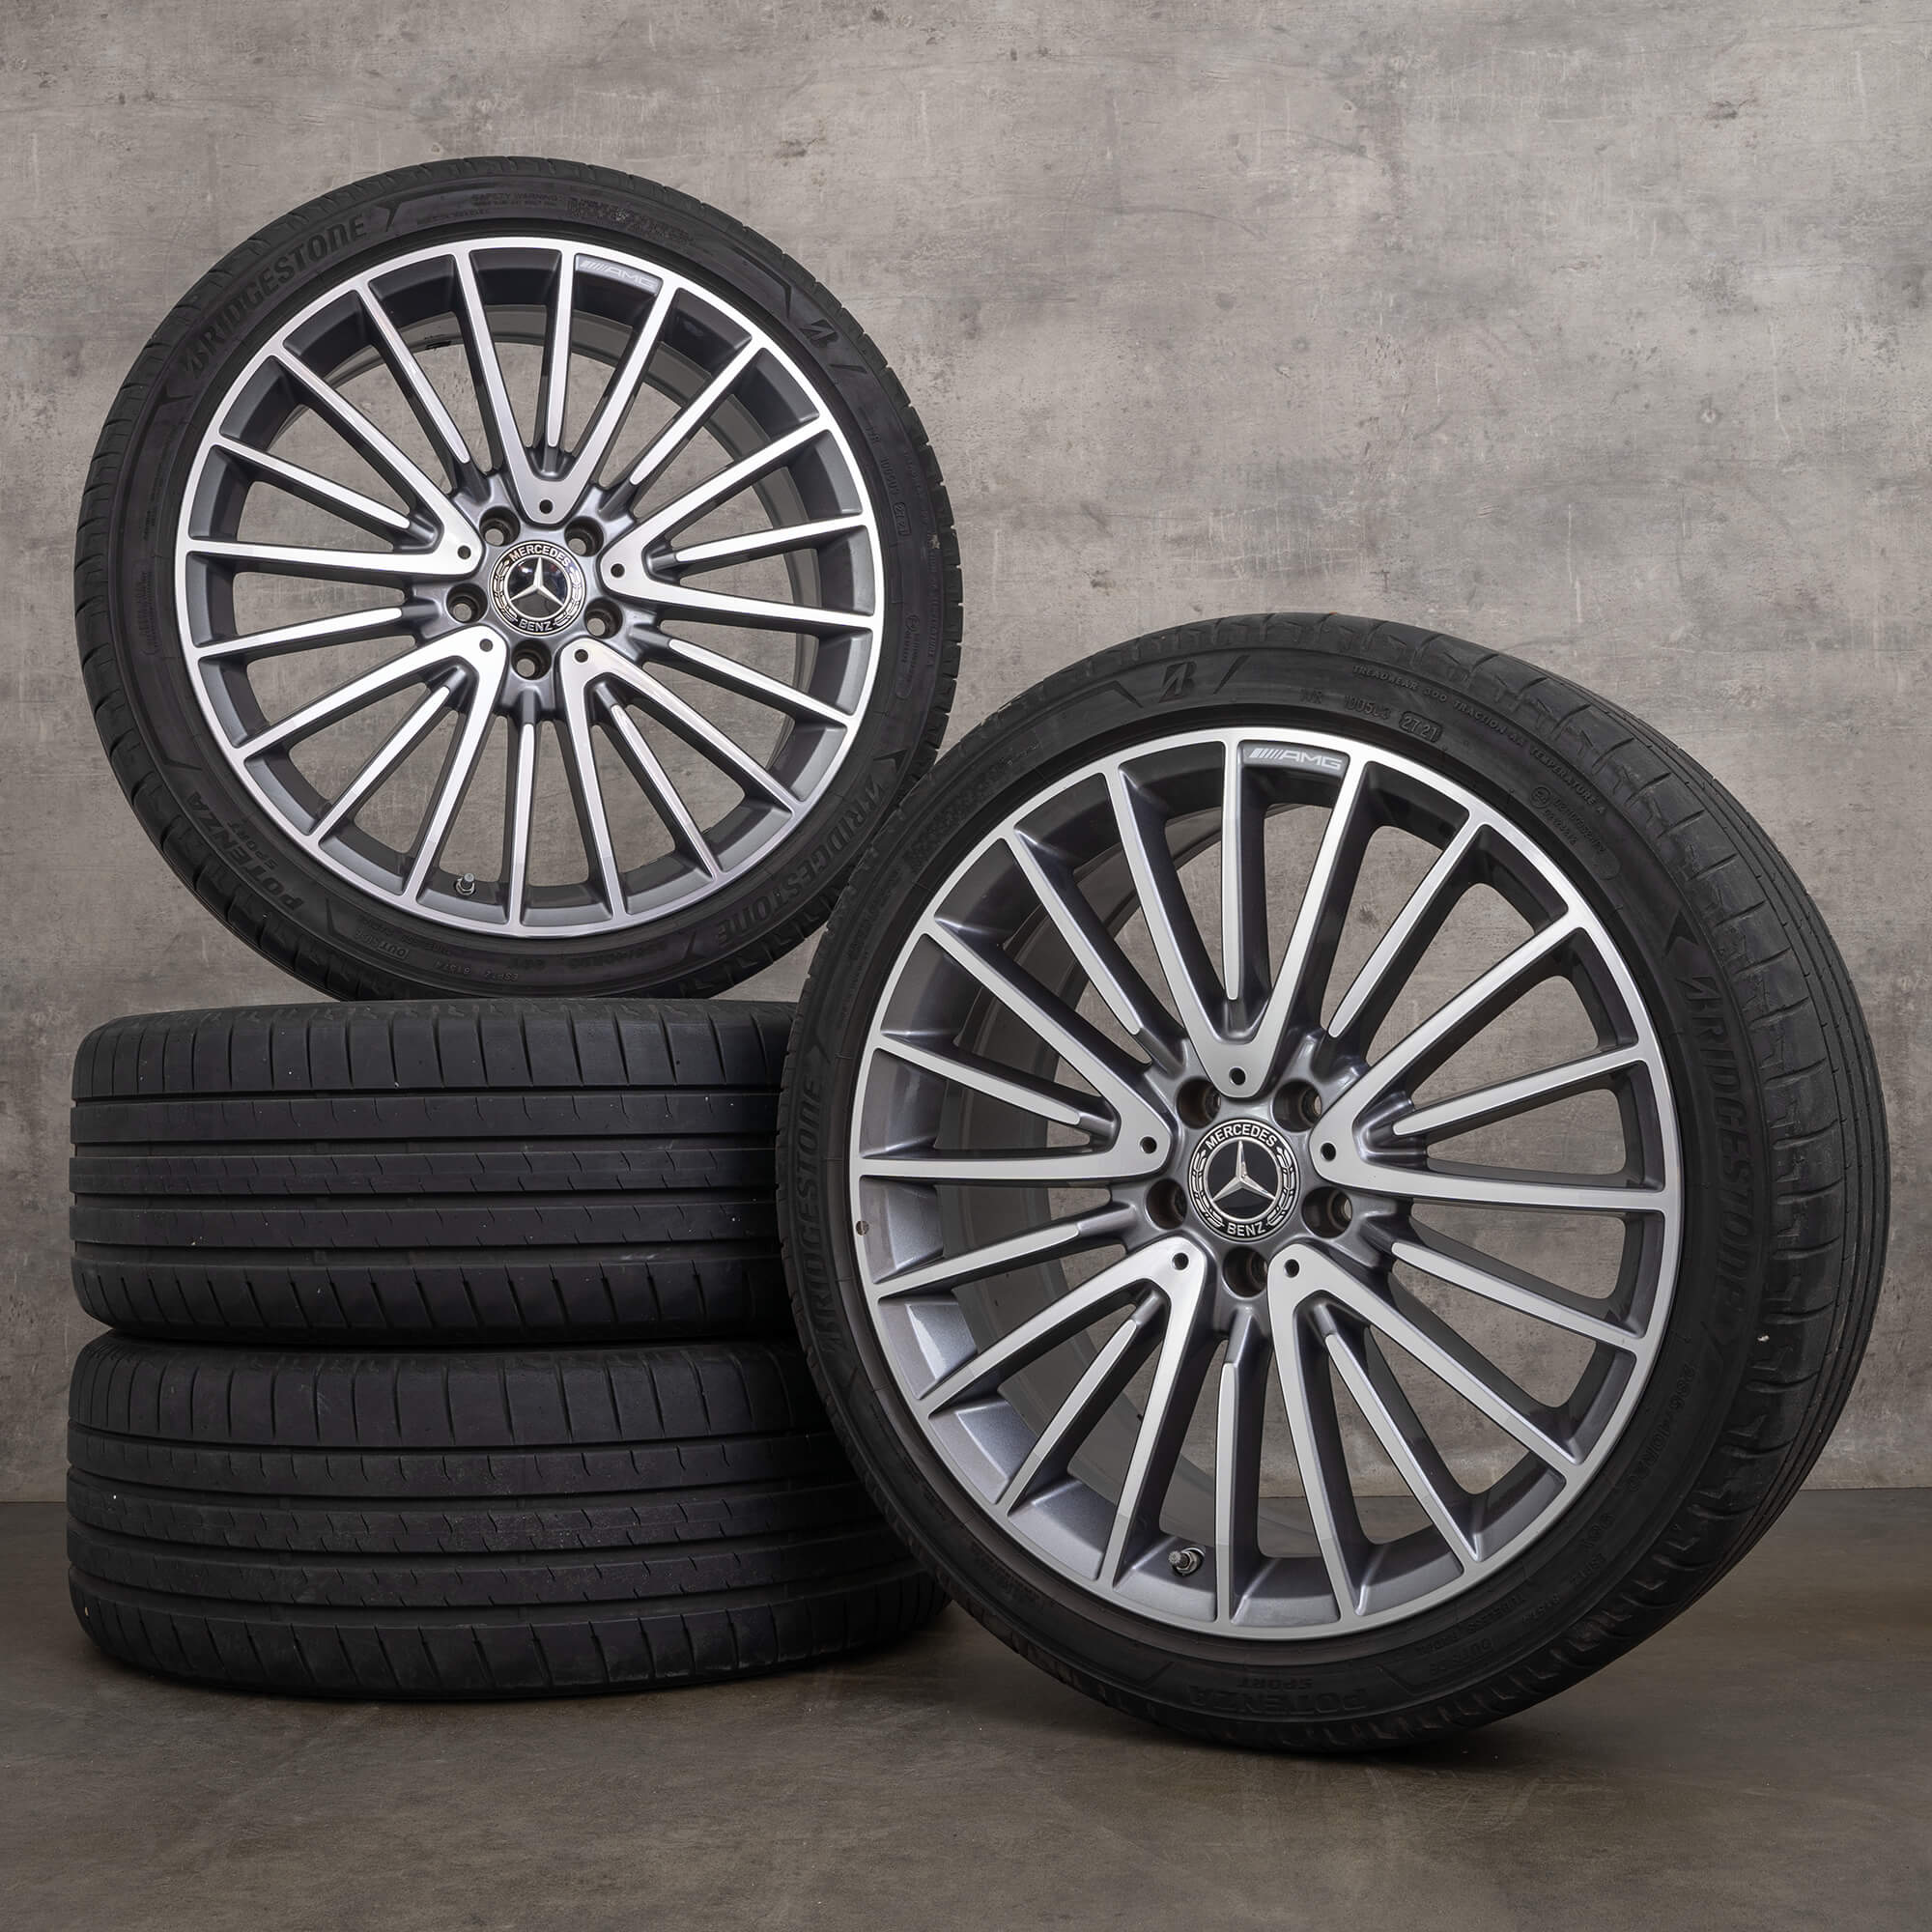 OEM AMG Mercedes GLA 45 X156 20 inch rims summer tires A1564012900 himalaya grey high-sheen